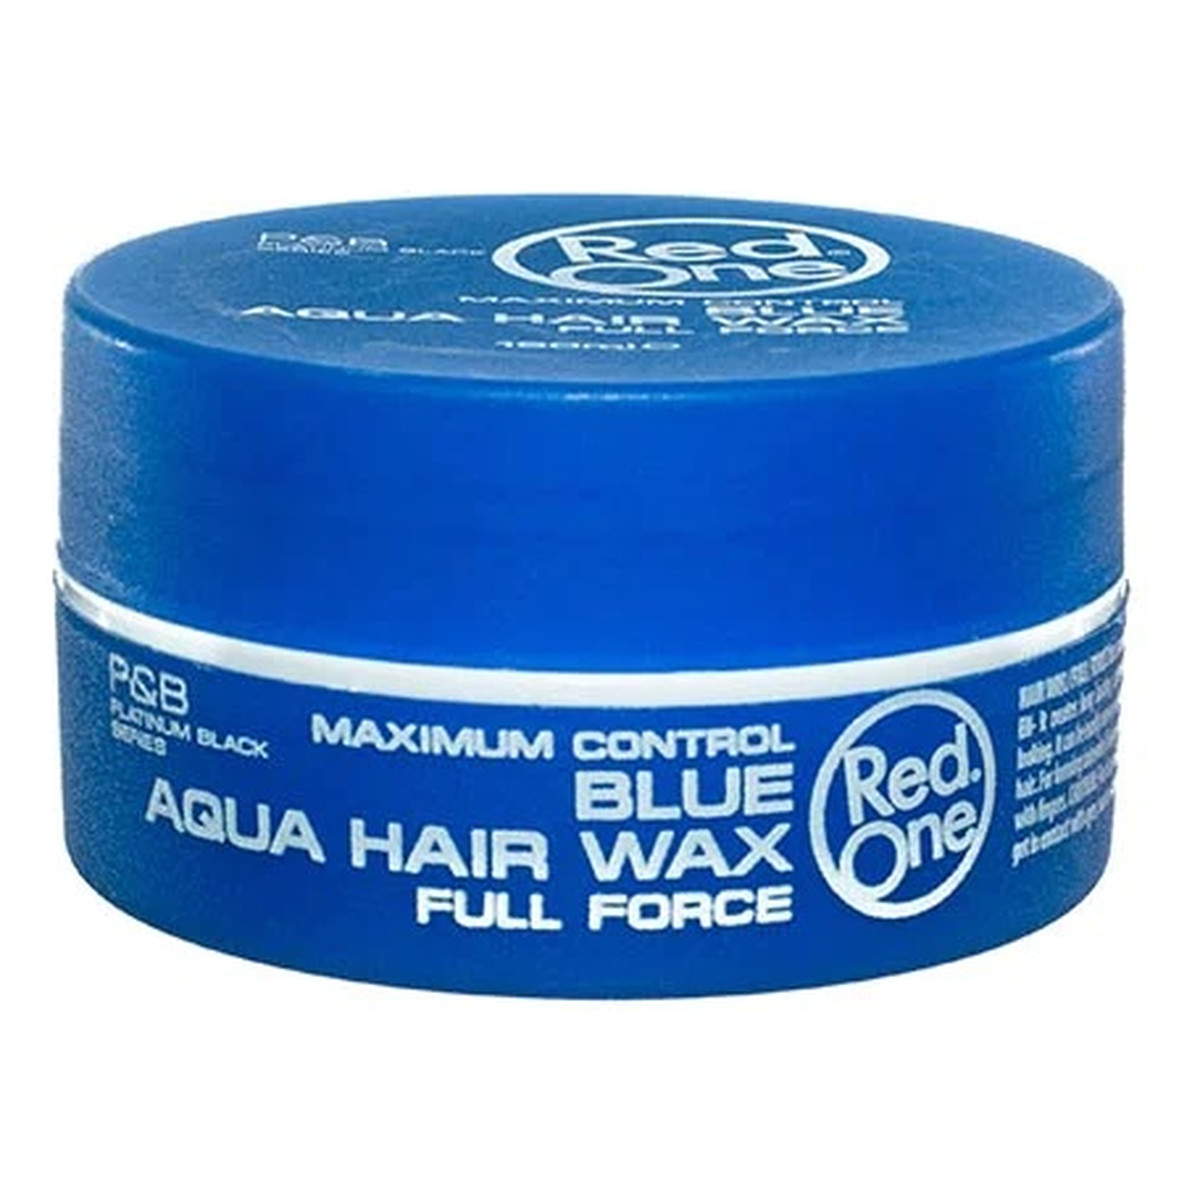 Red One Aqua hair gel wax full force wosk do włosów blue 150ml